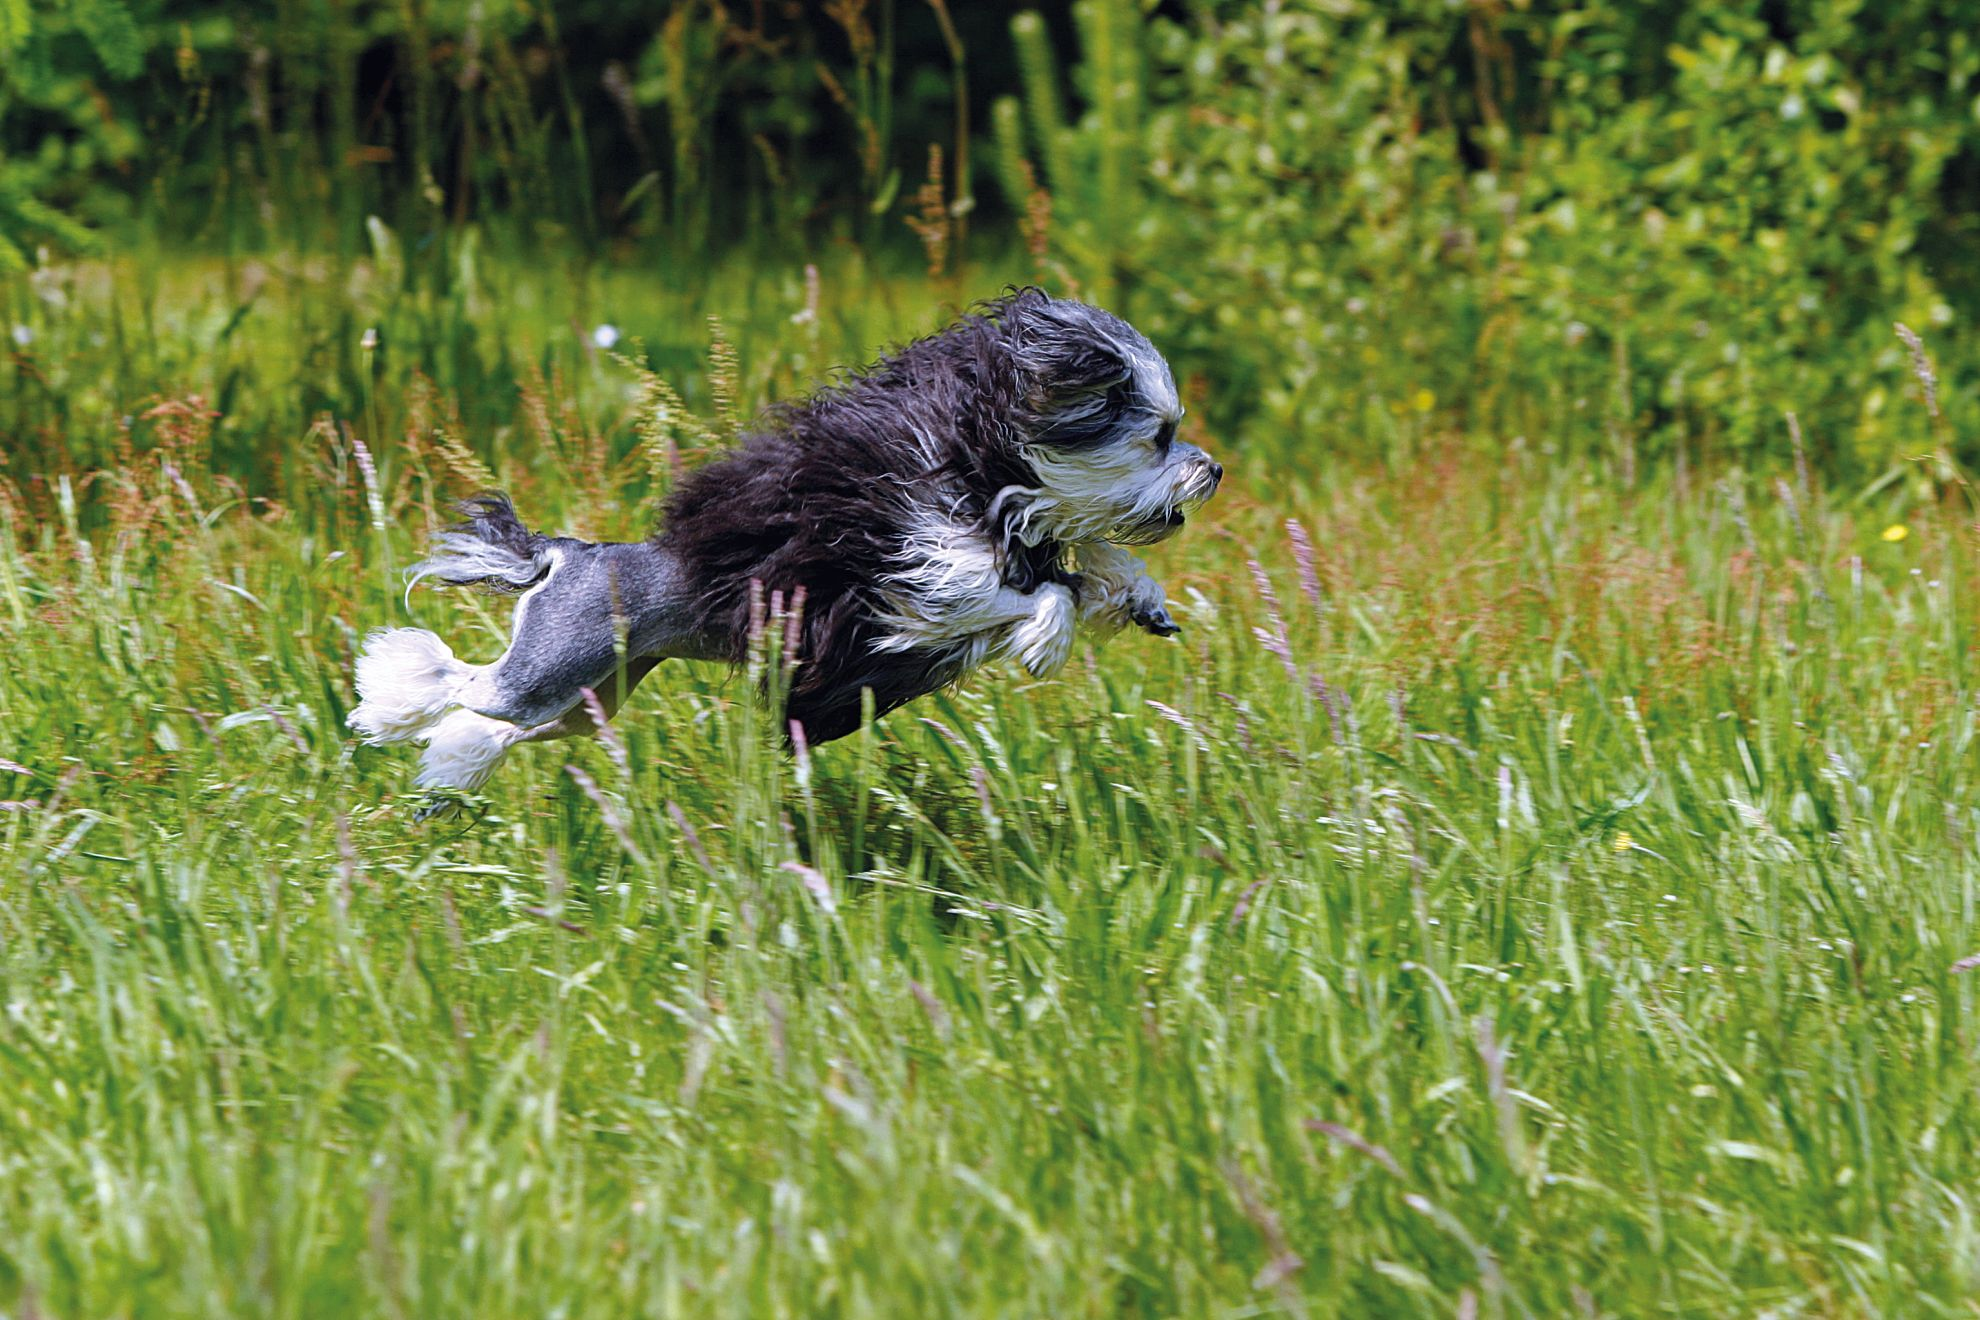 Lowchen running through field of long grass